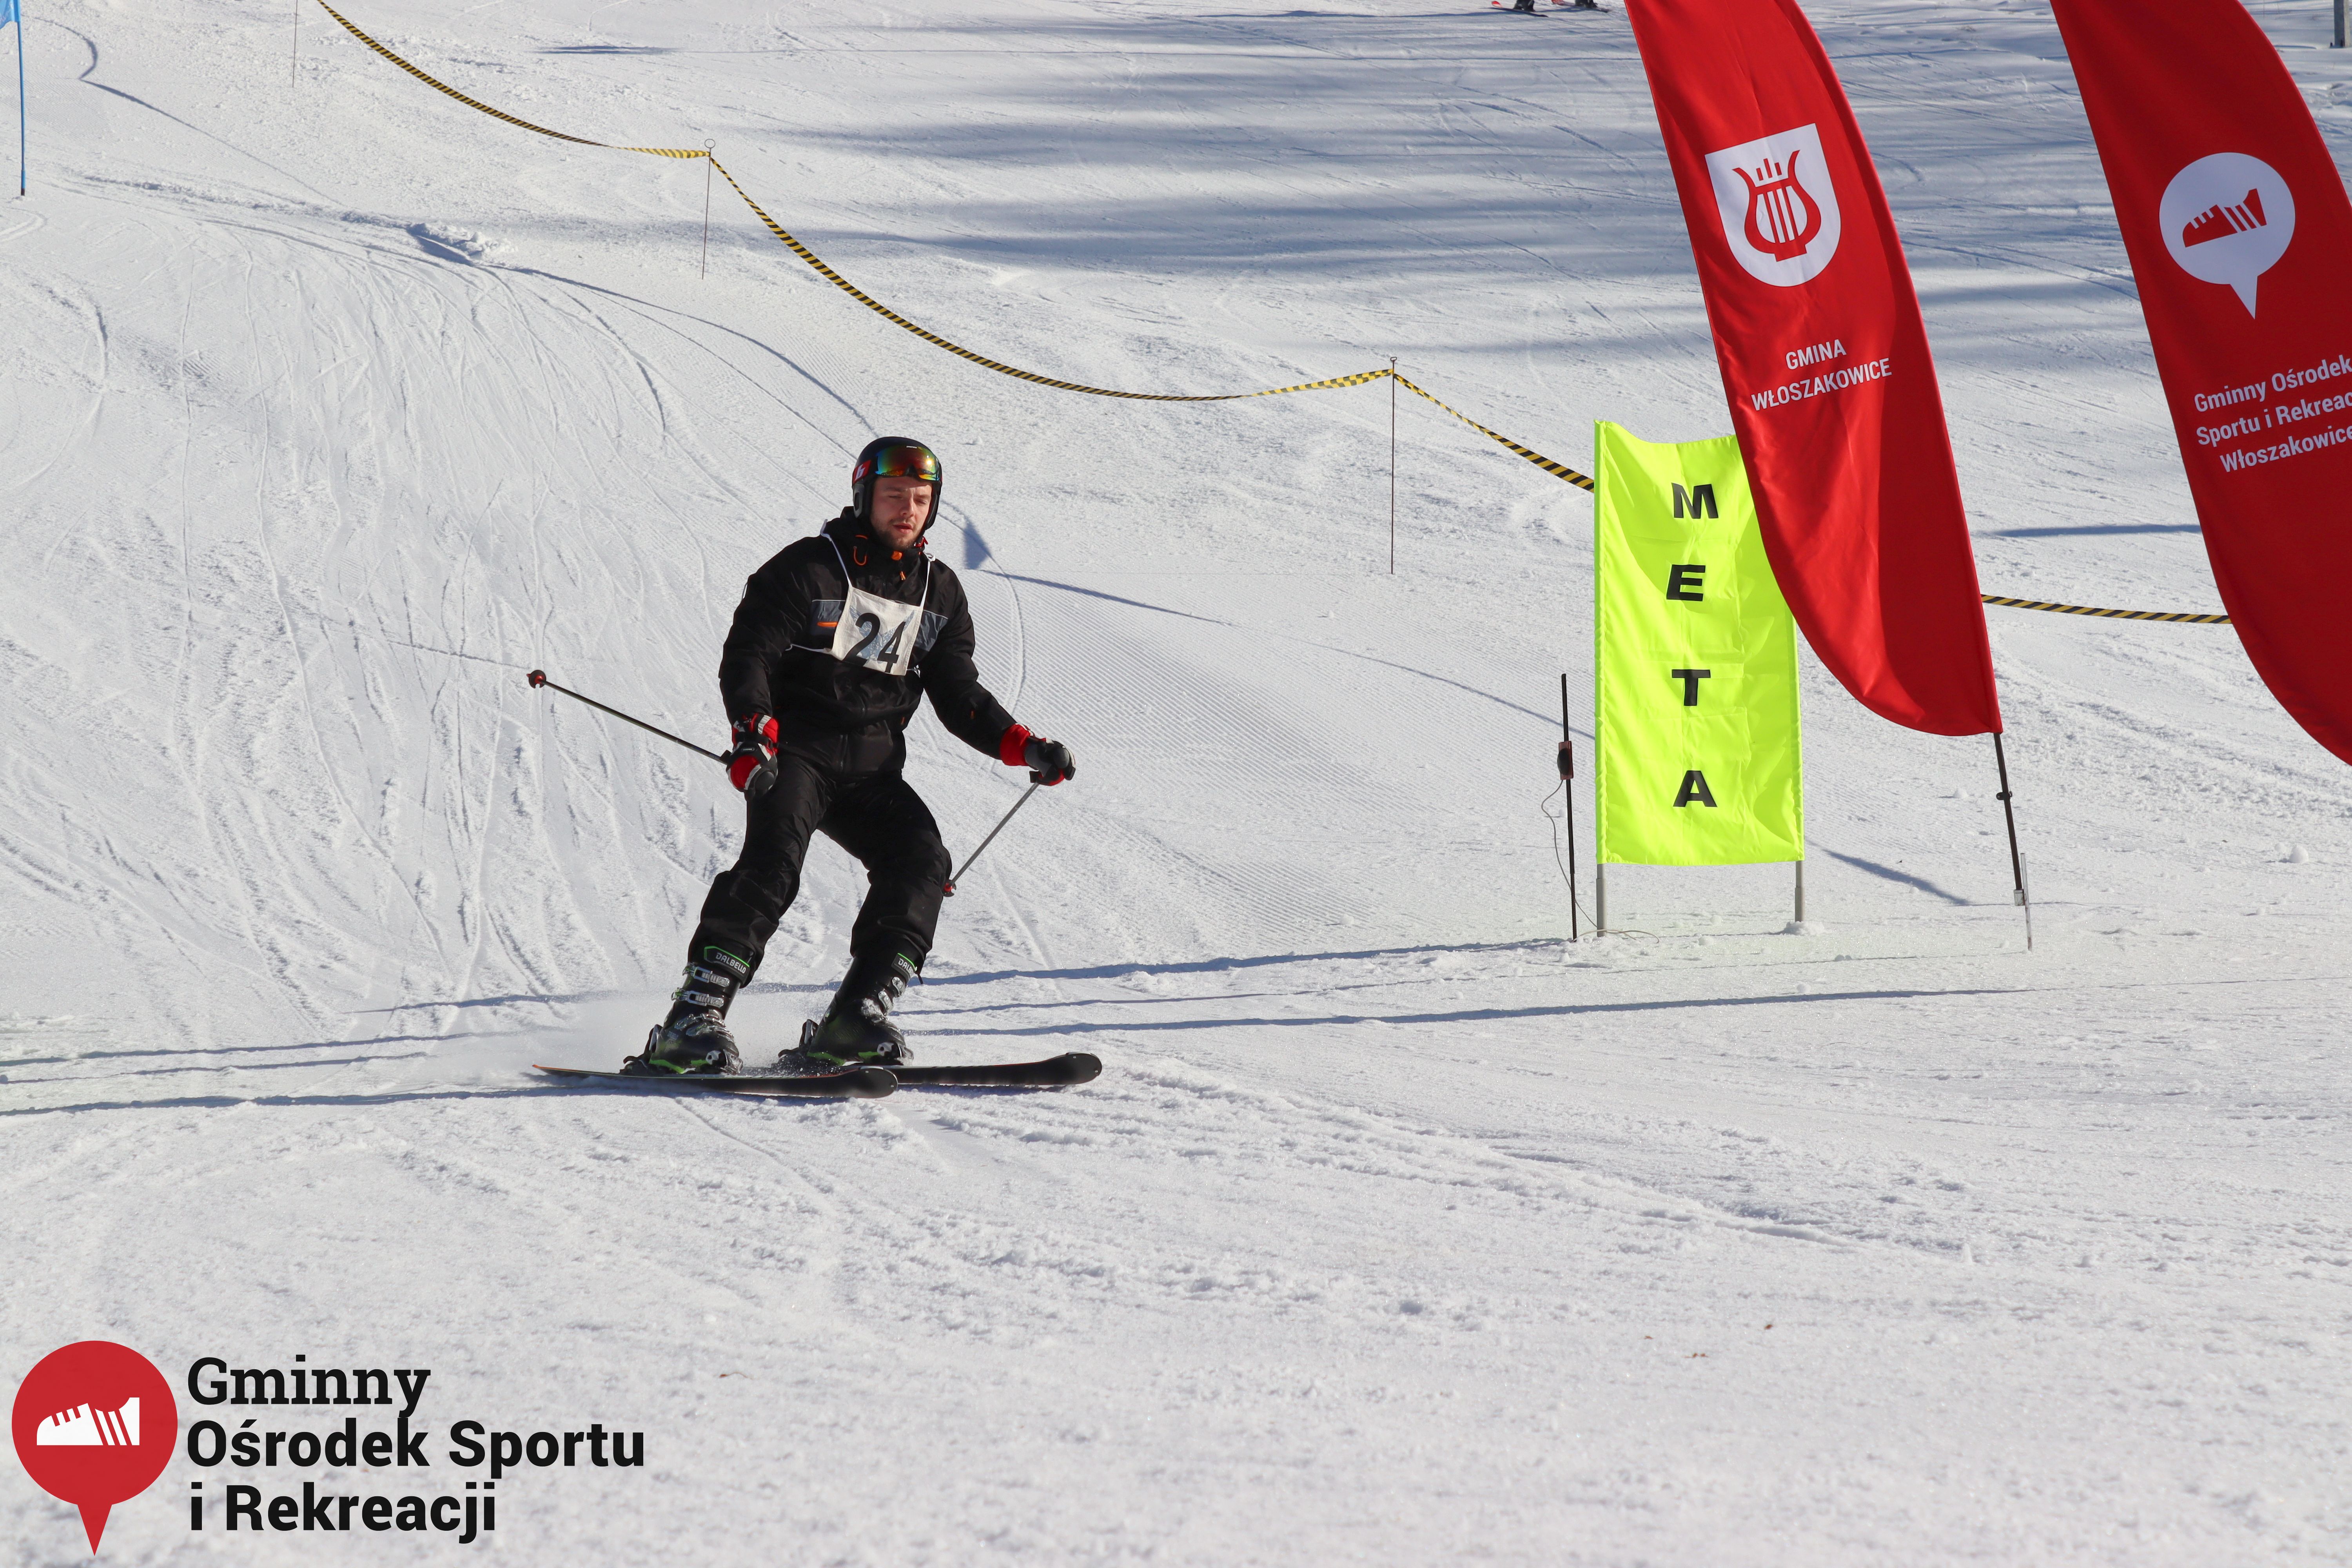 2022.02.12 - 18. Mistrzostwa Gminy Woszakowice w narciarstwie101.jpg - 2,72 MB